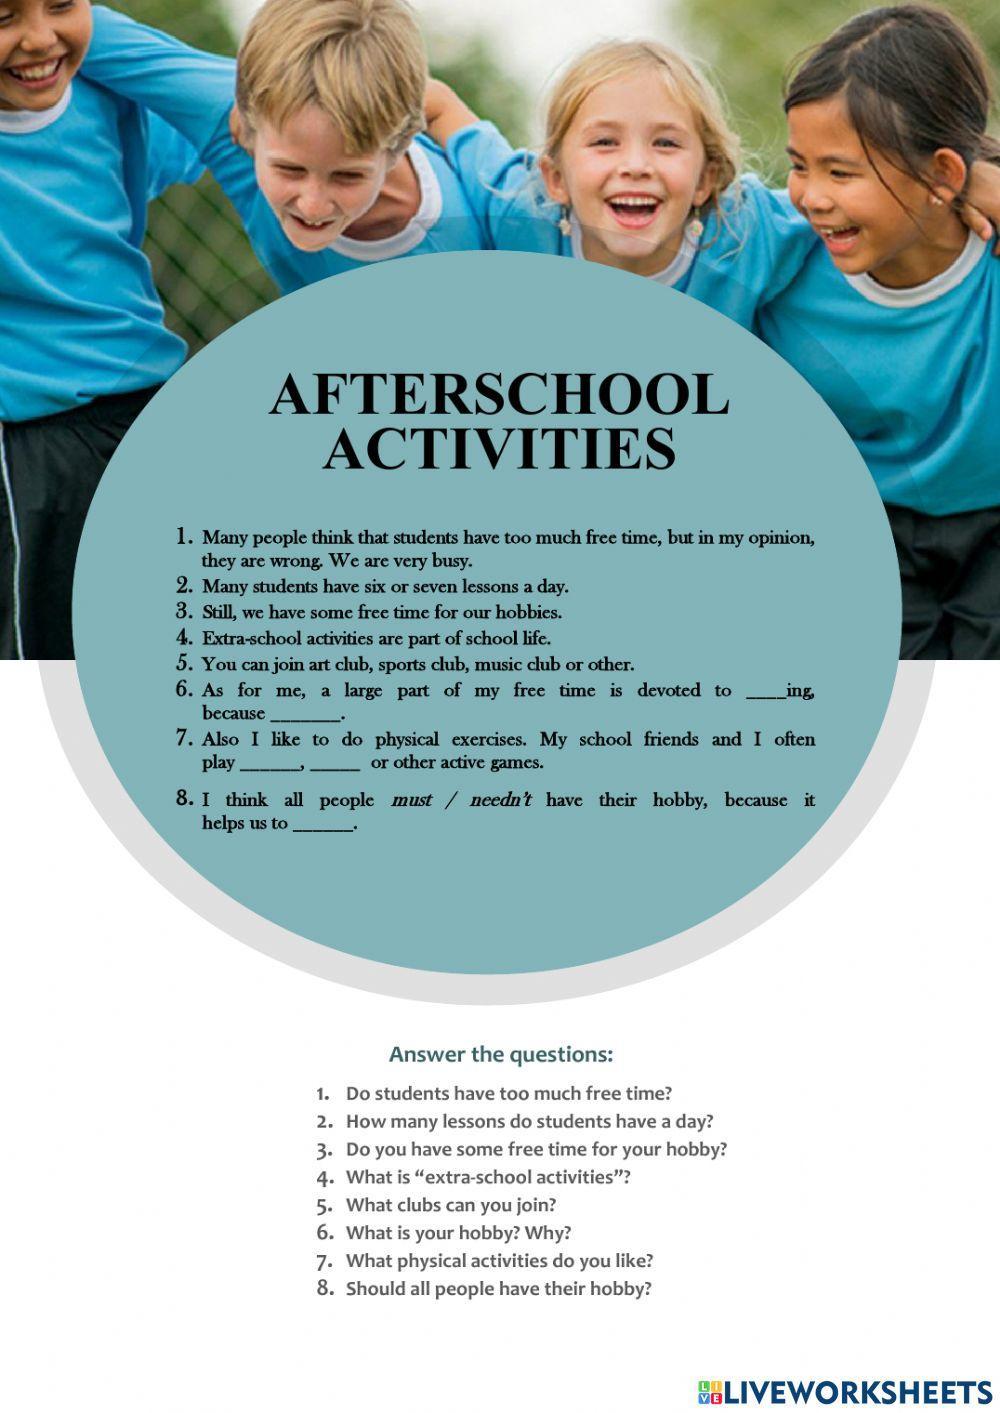 Afterschool activities (topic)